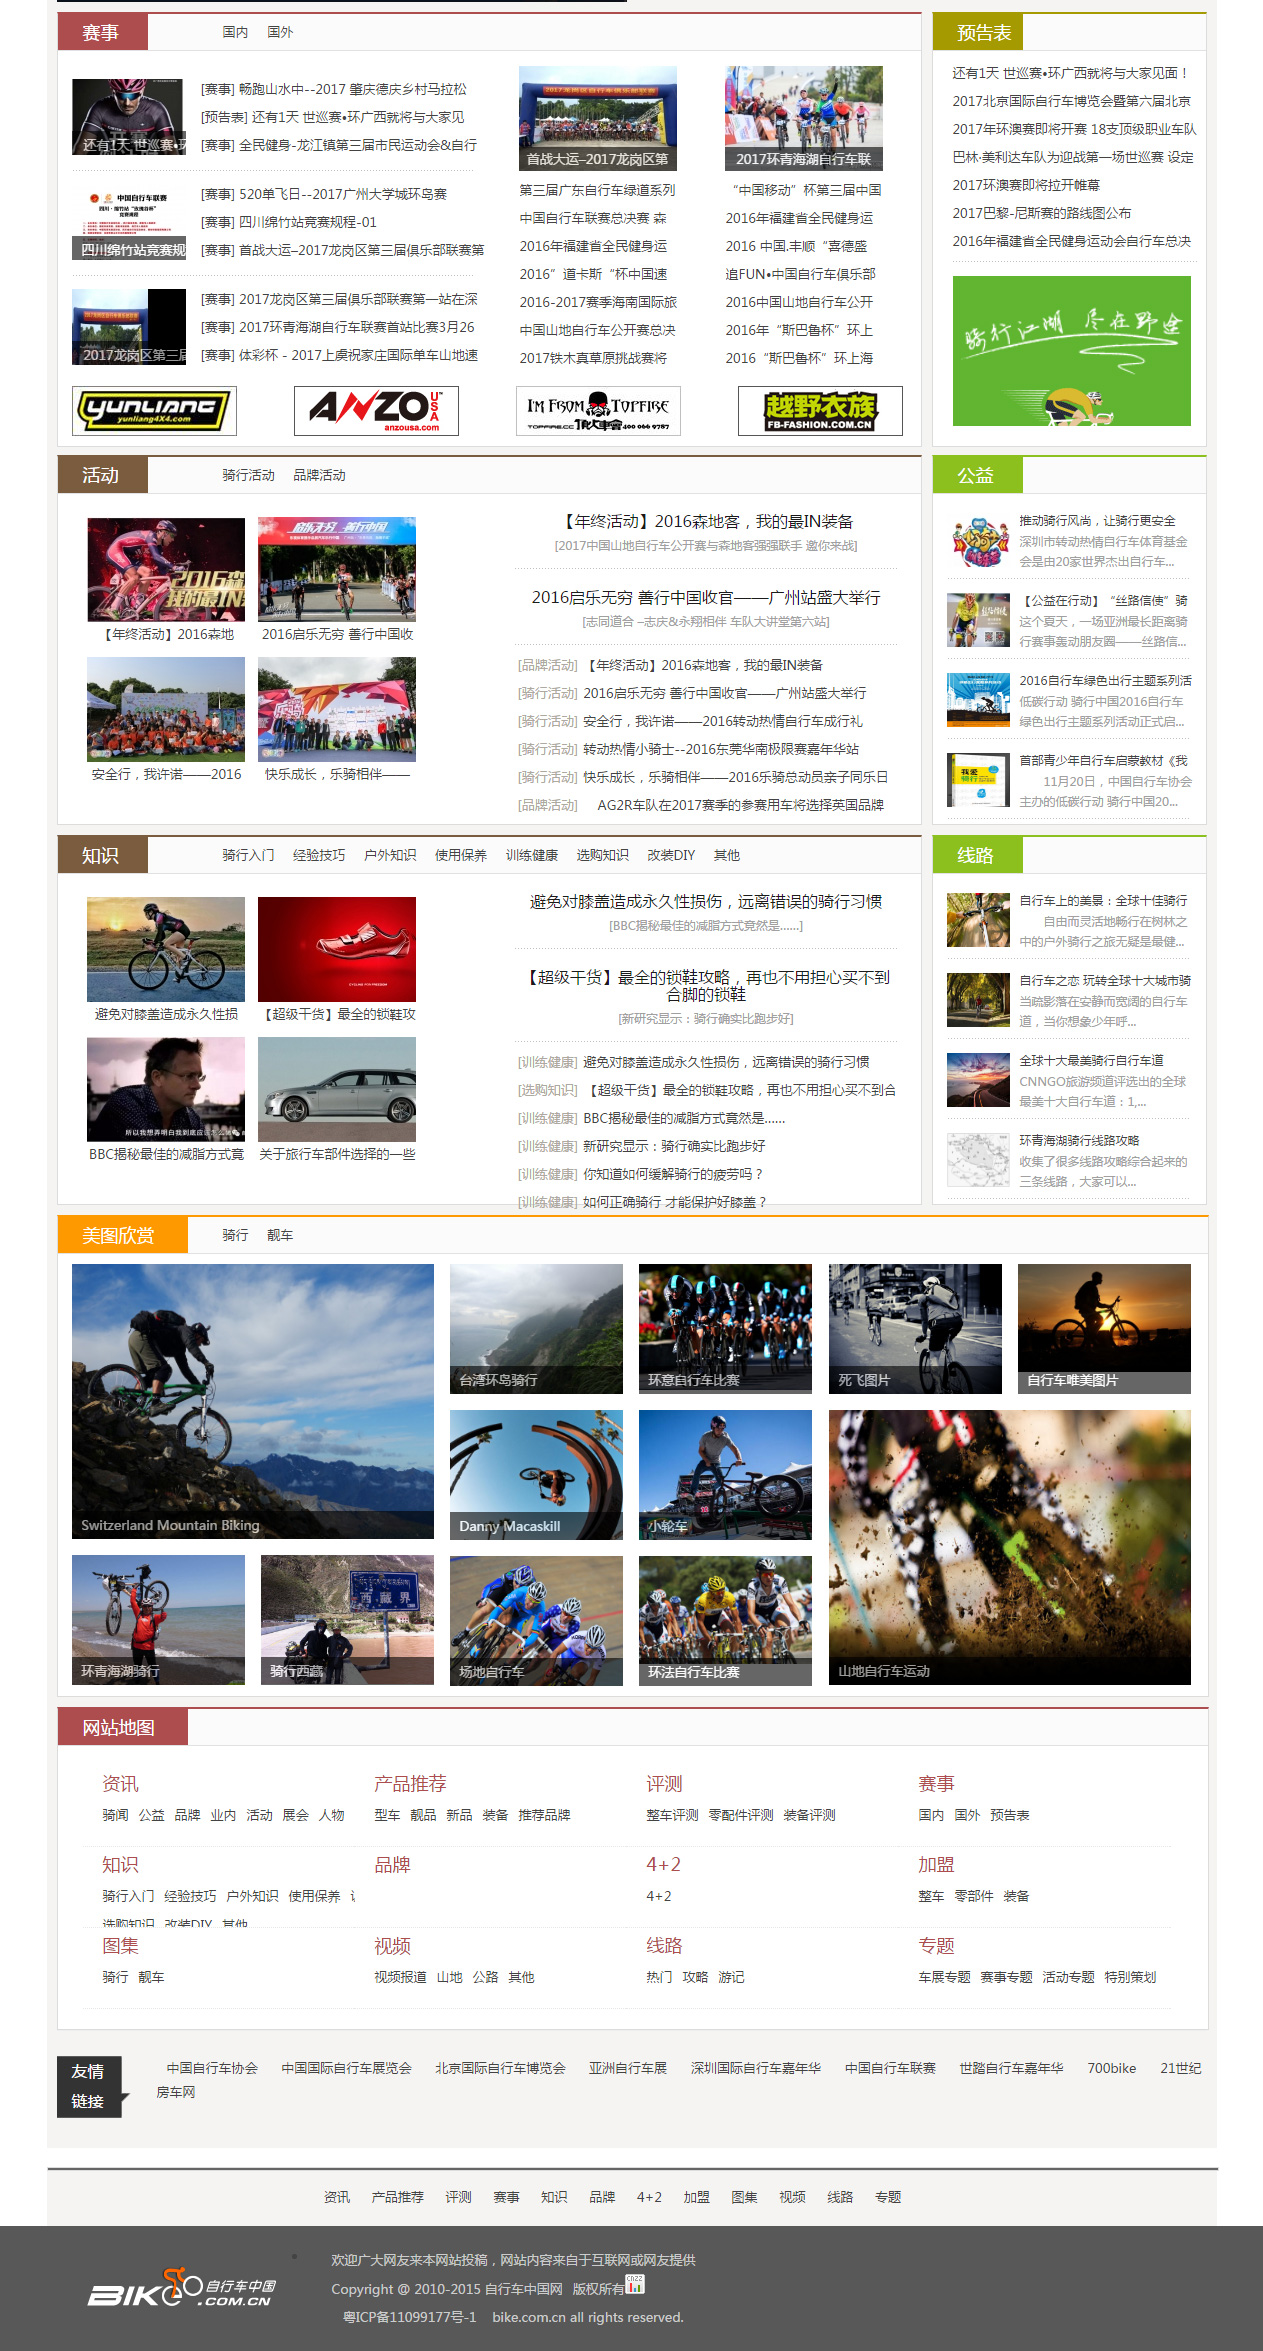 自行车中国网-_-BIKE.COM.jpg